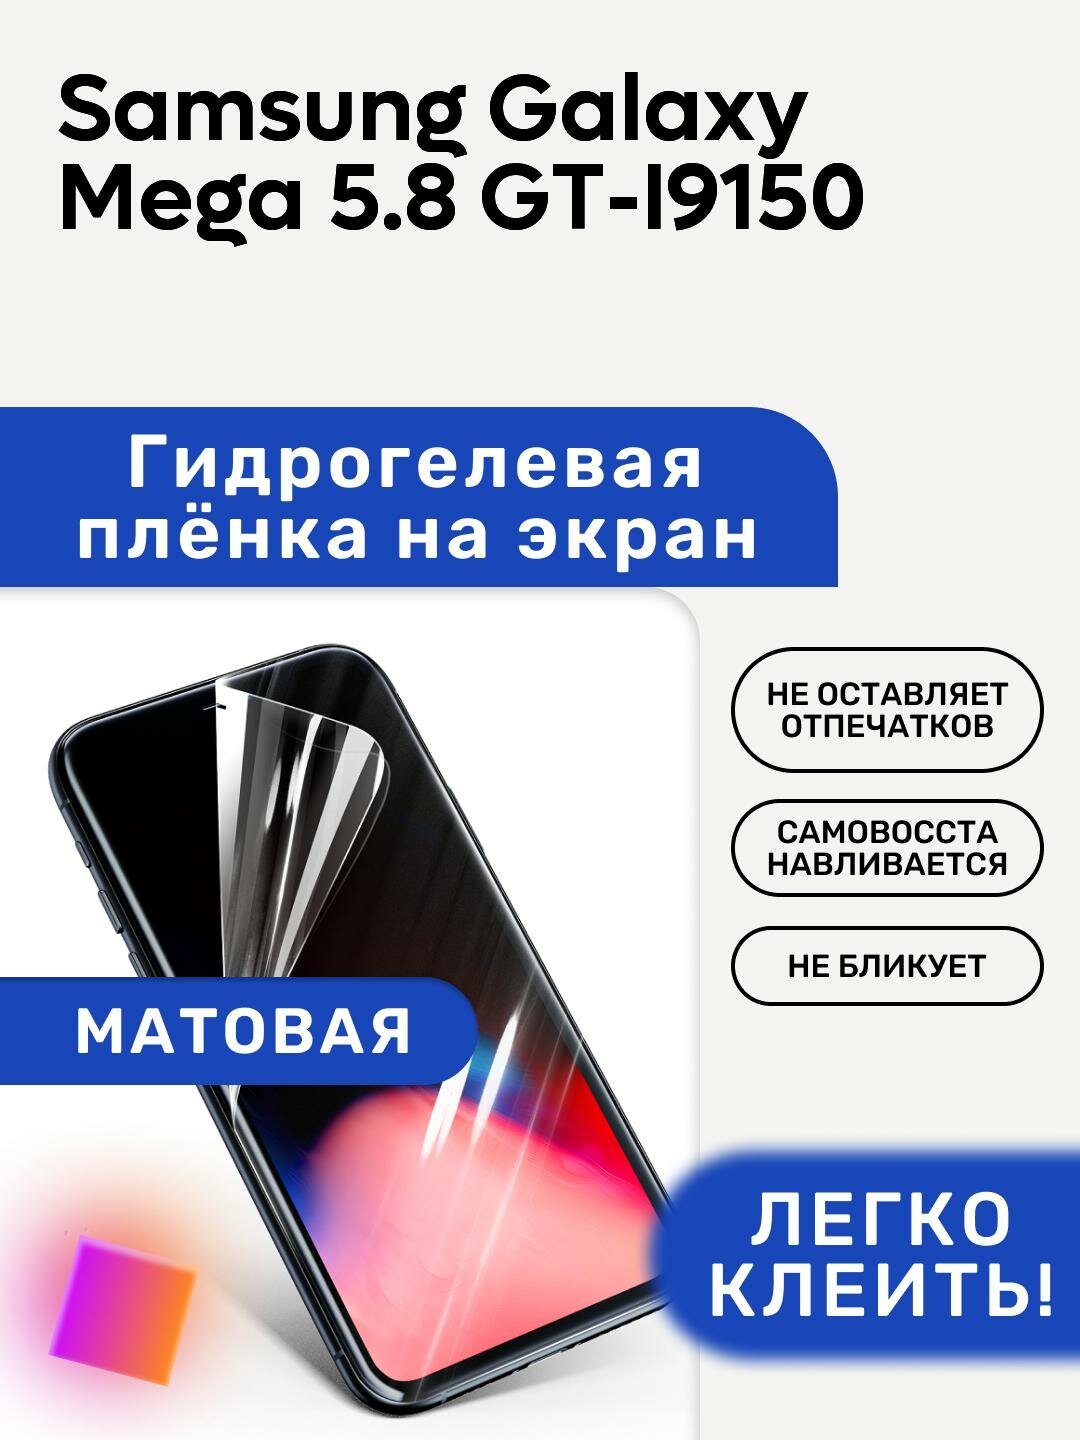 Матовая Гидрогелевая плёнка, полиуретановая, защита экрана Samsung Galaxy Mega 5.8 GT-I9150